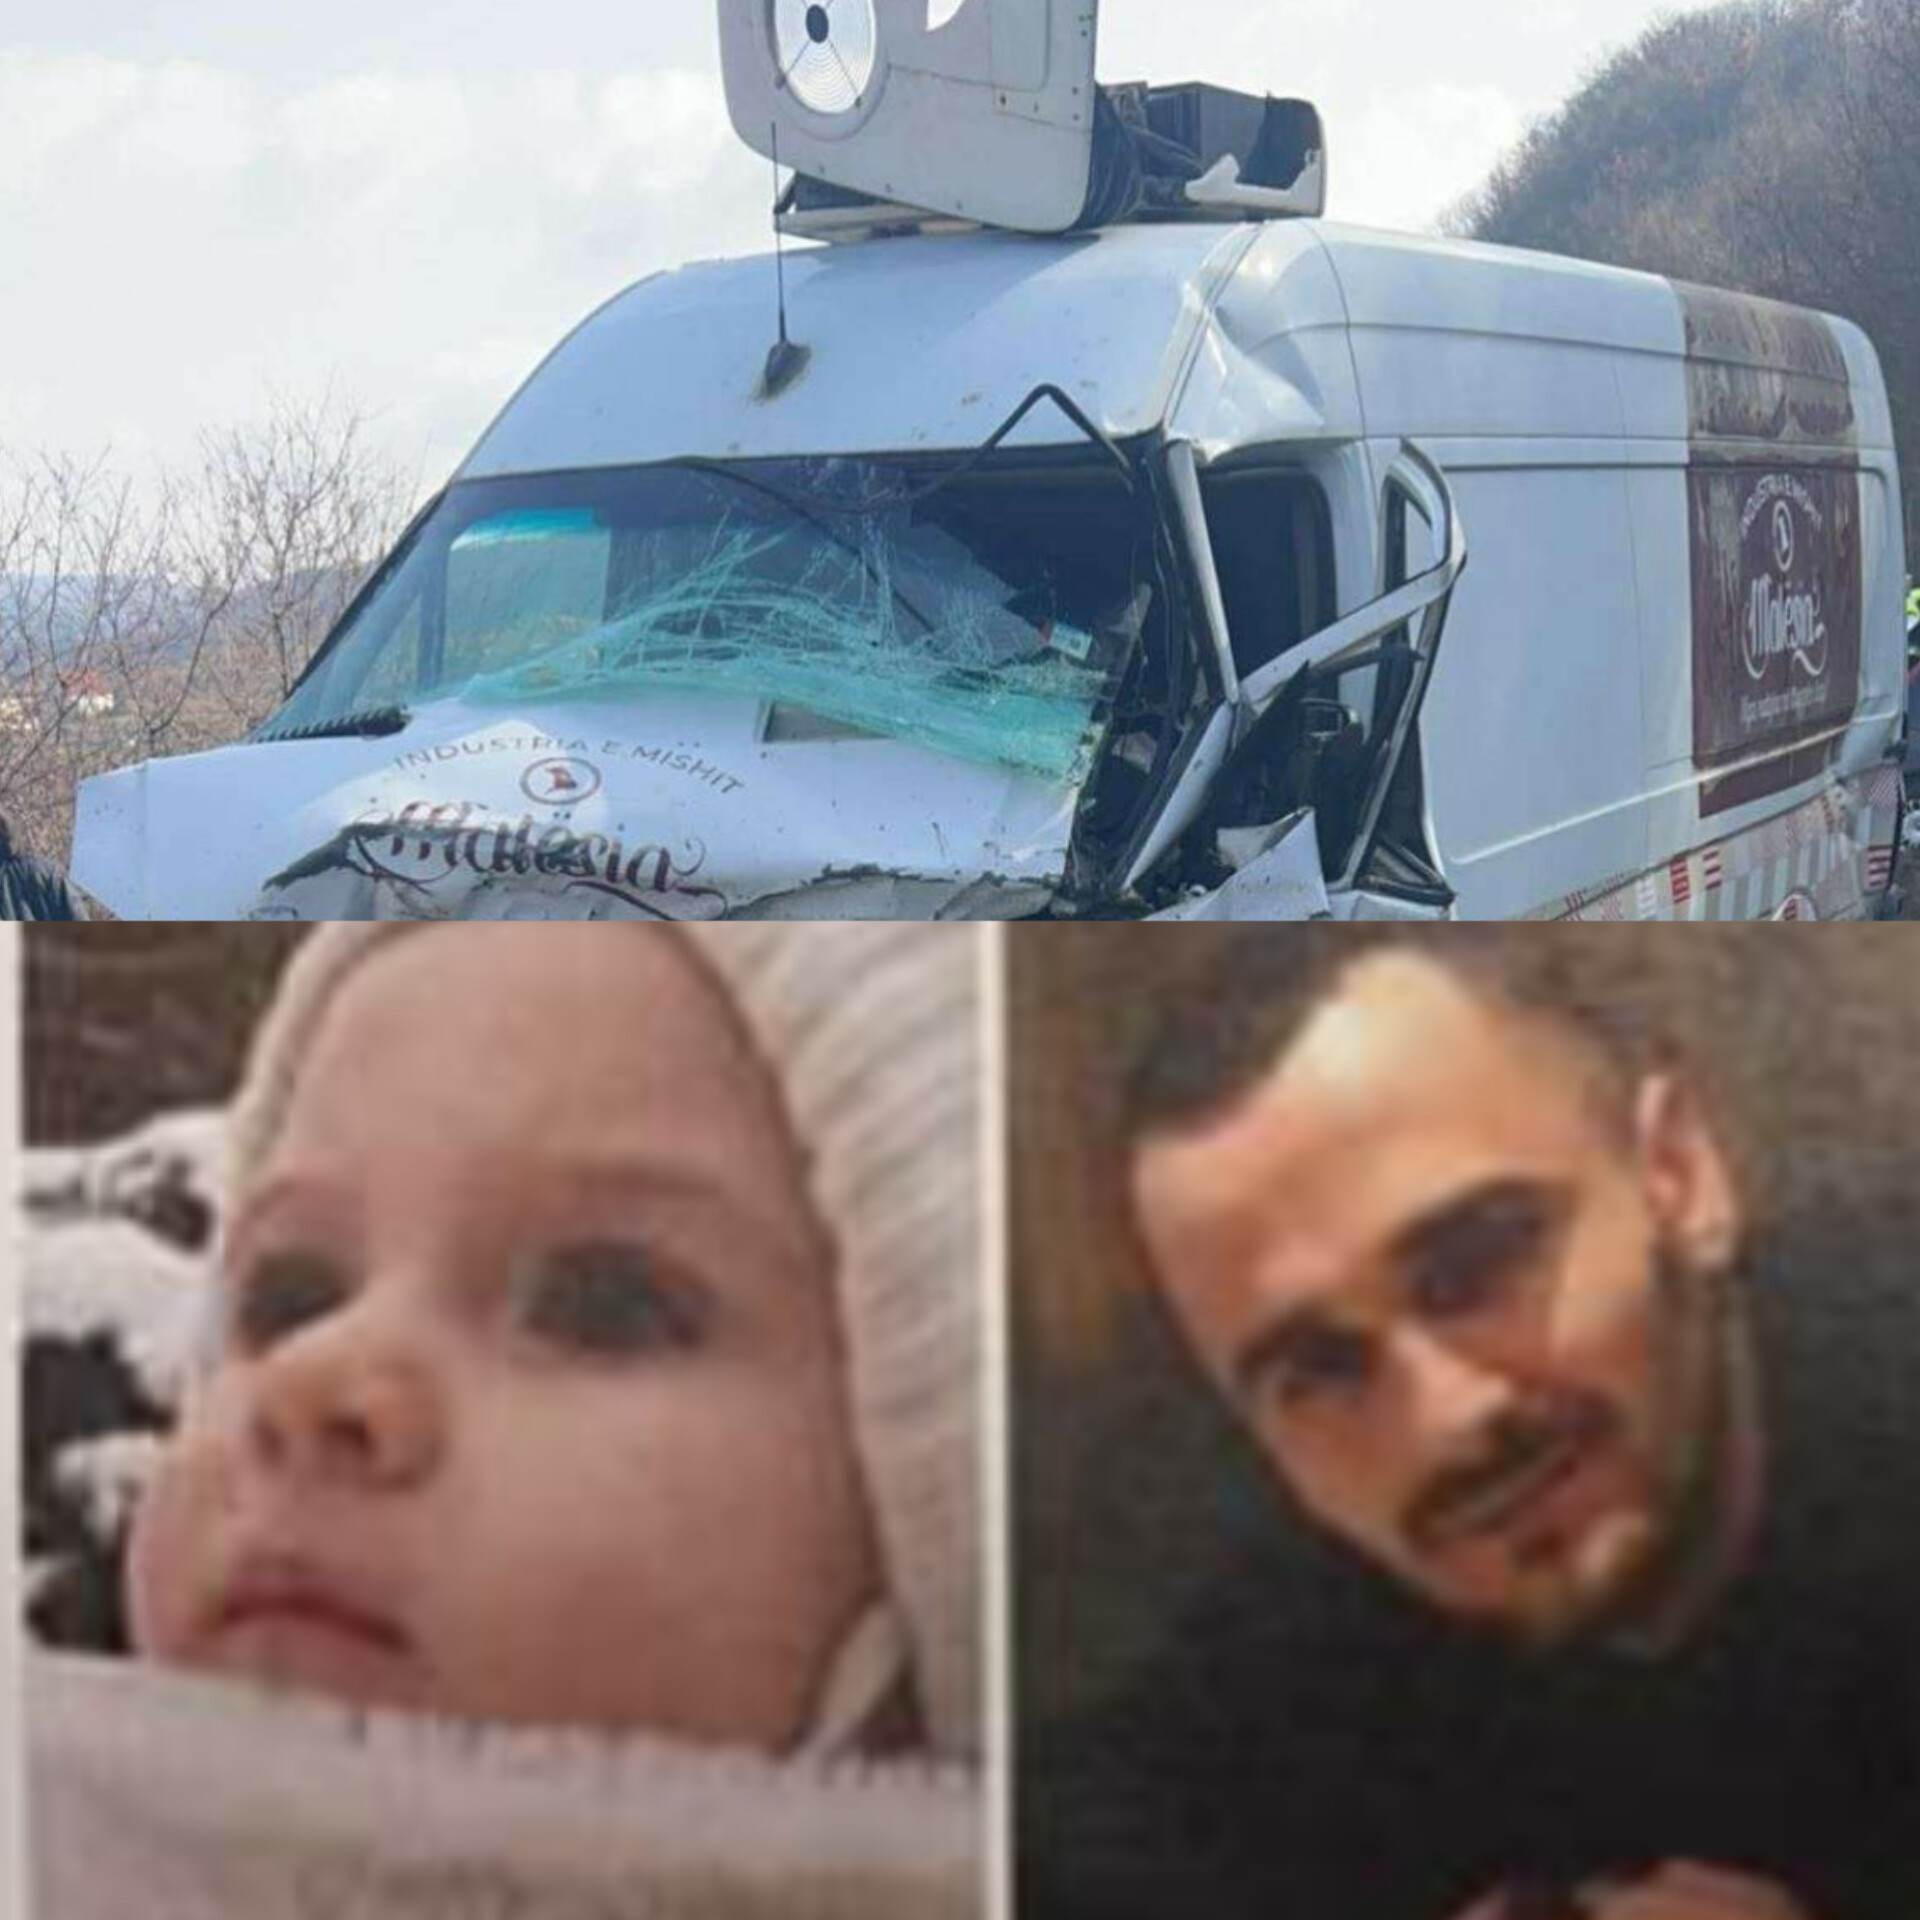 Sot varrosen babë e bijë që humbën jetën në aksidentin në Kamenicë